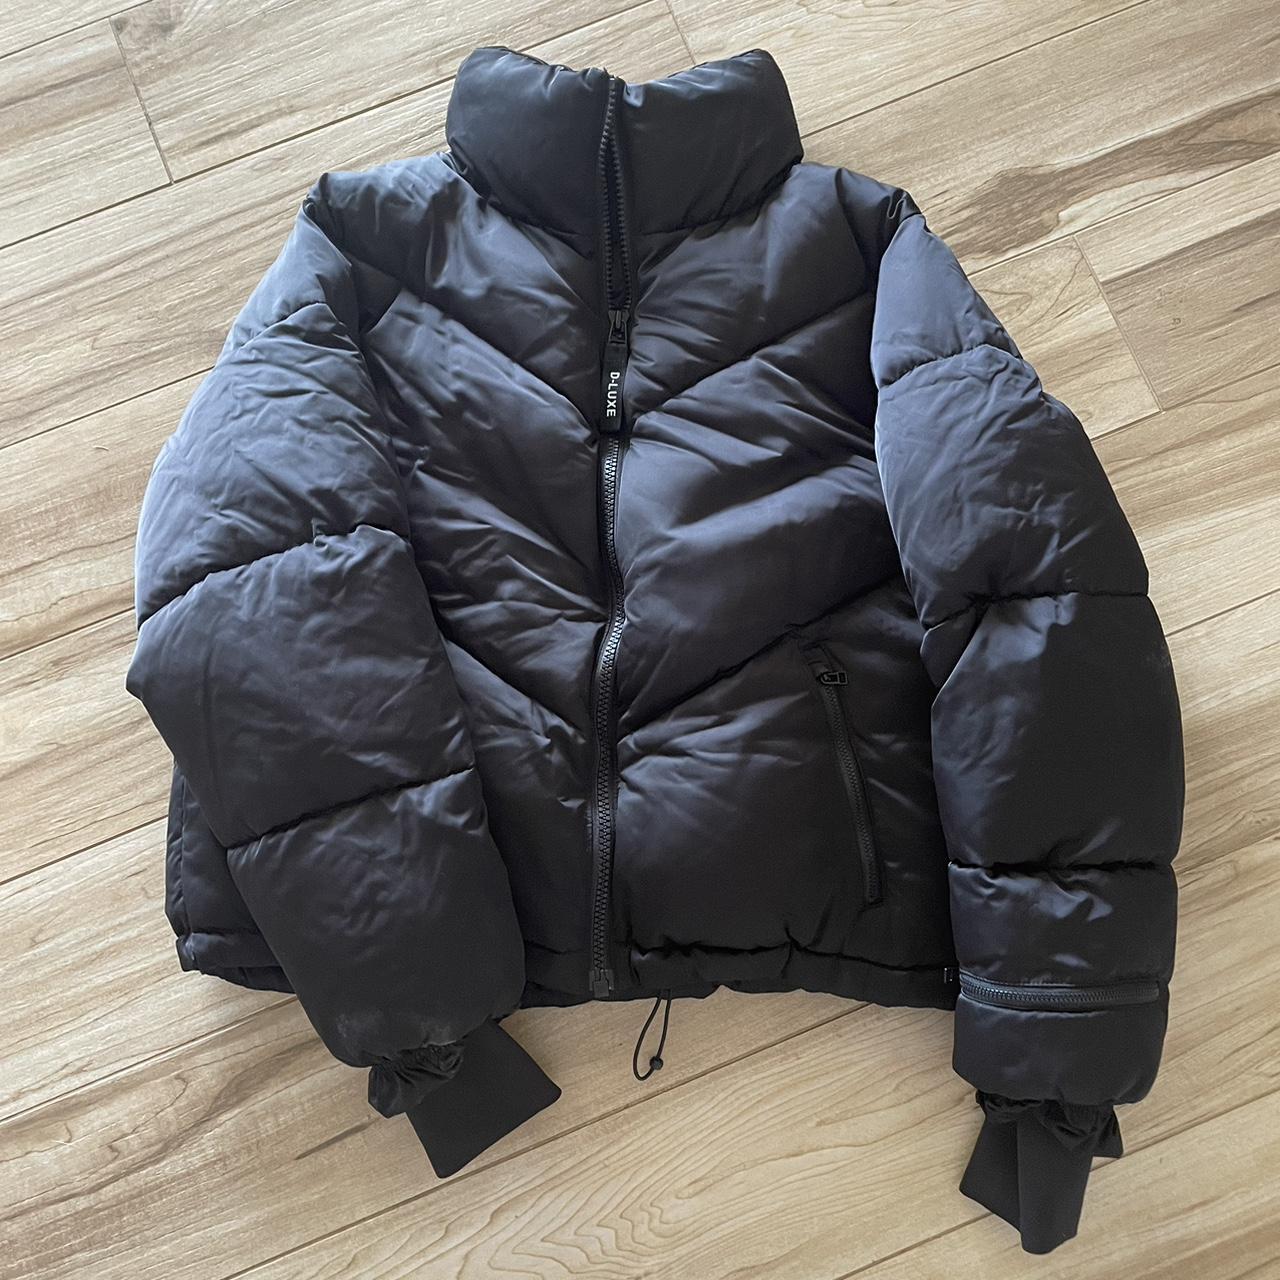 Decjuba D Luxe Puffer Jacket Size Medium Keeps you... - Depop